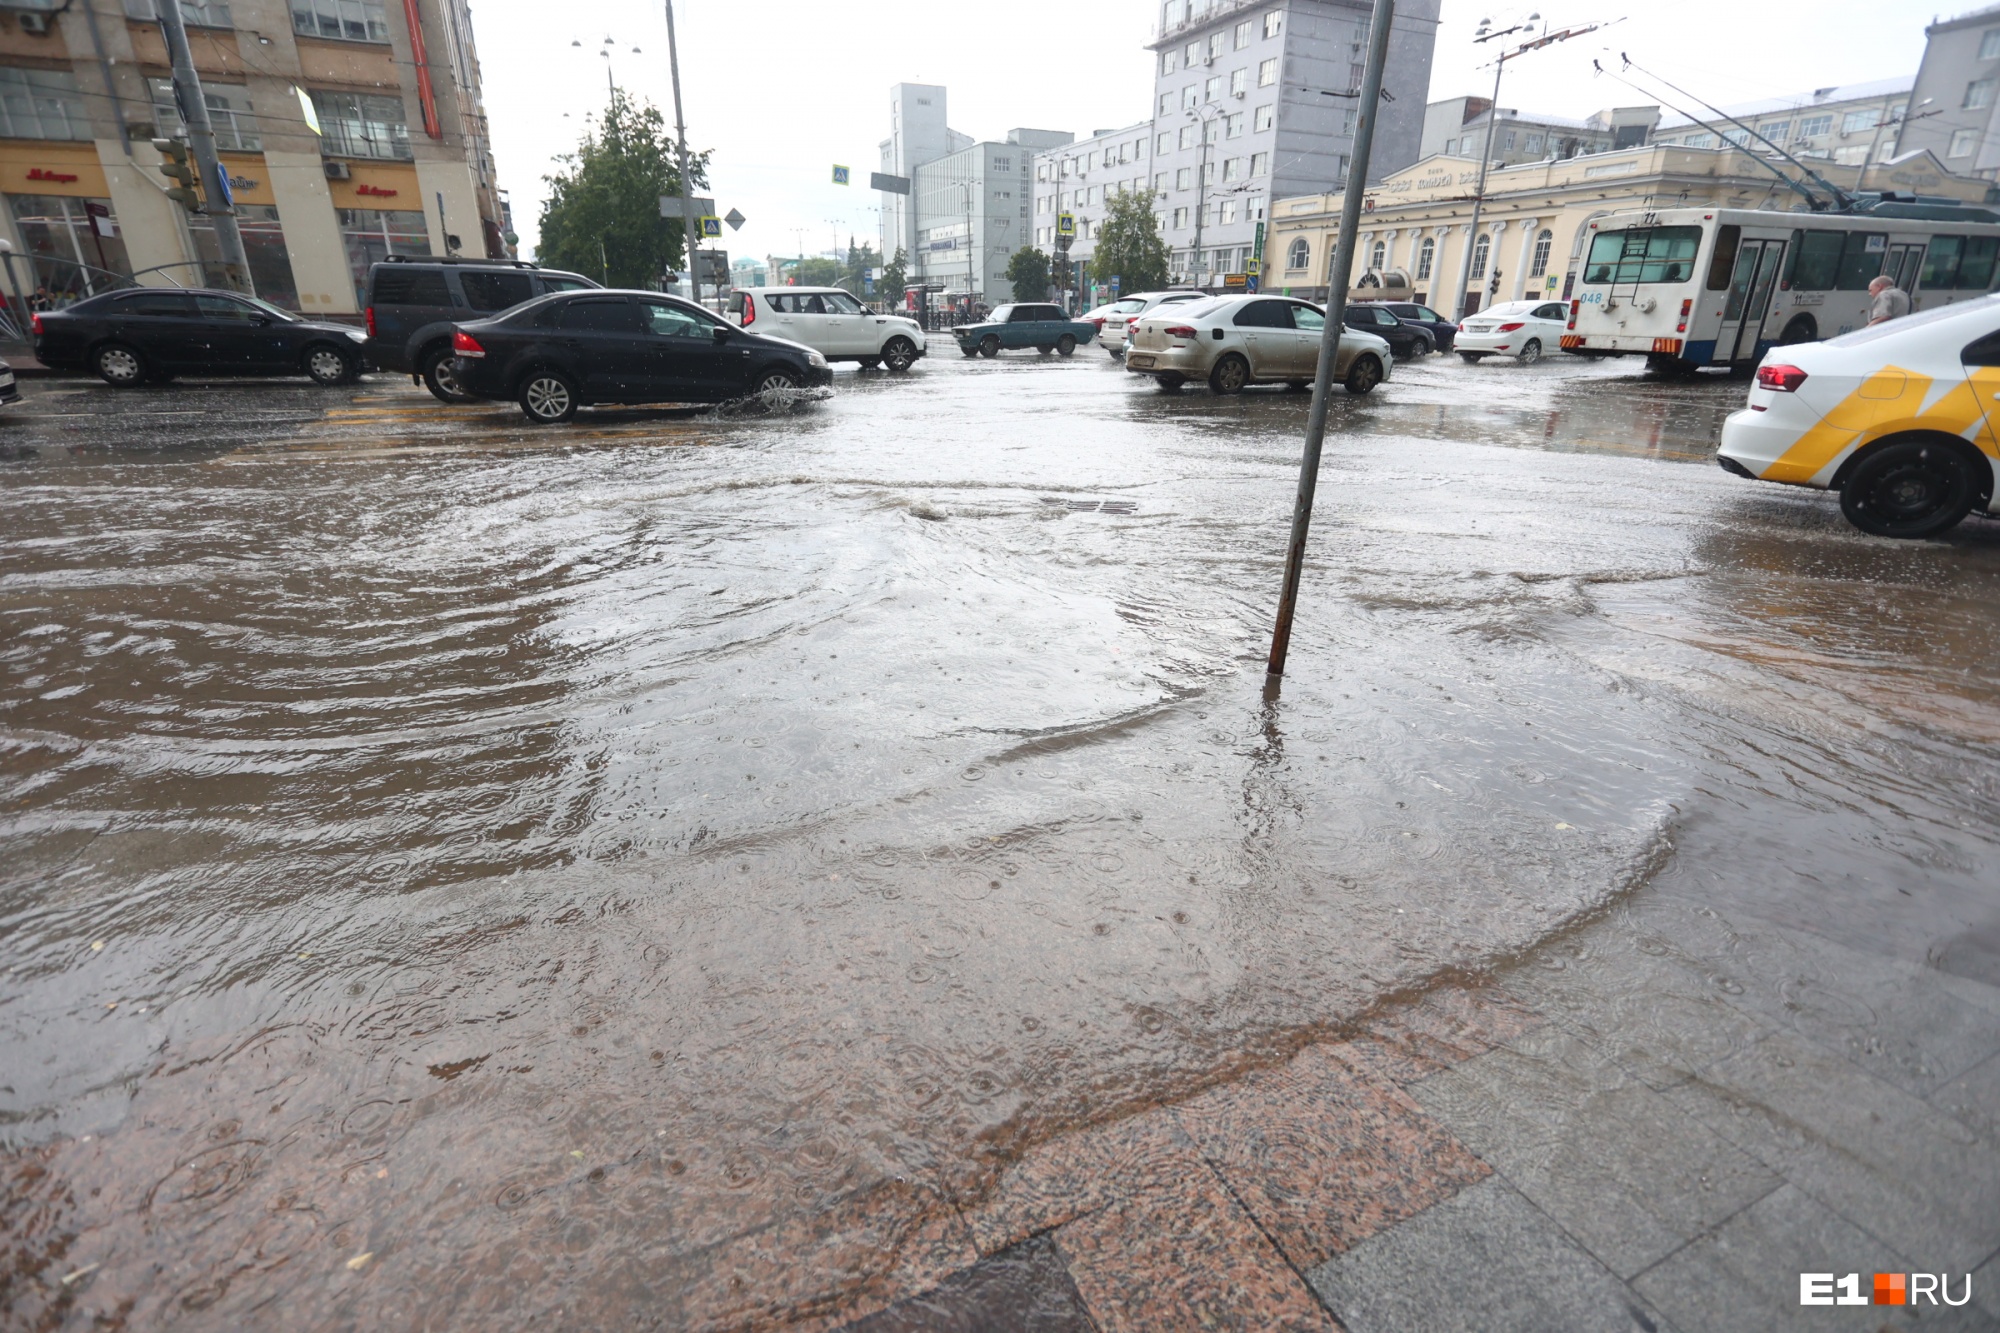 Мэр философски ответил, почему Екатеринбург уходит под воду во время дождей